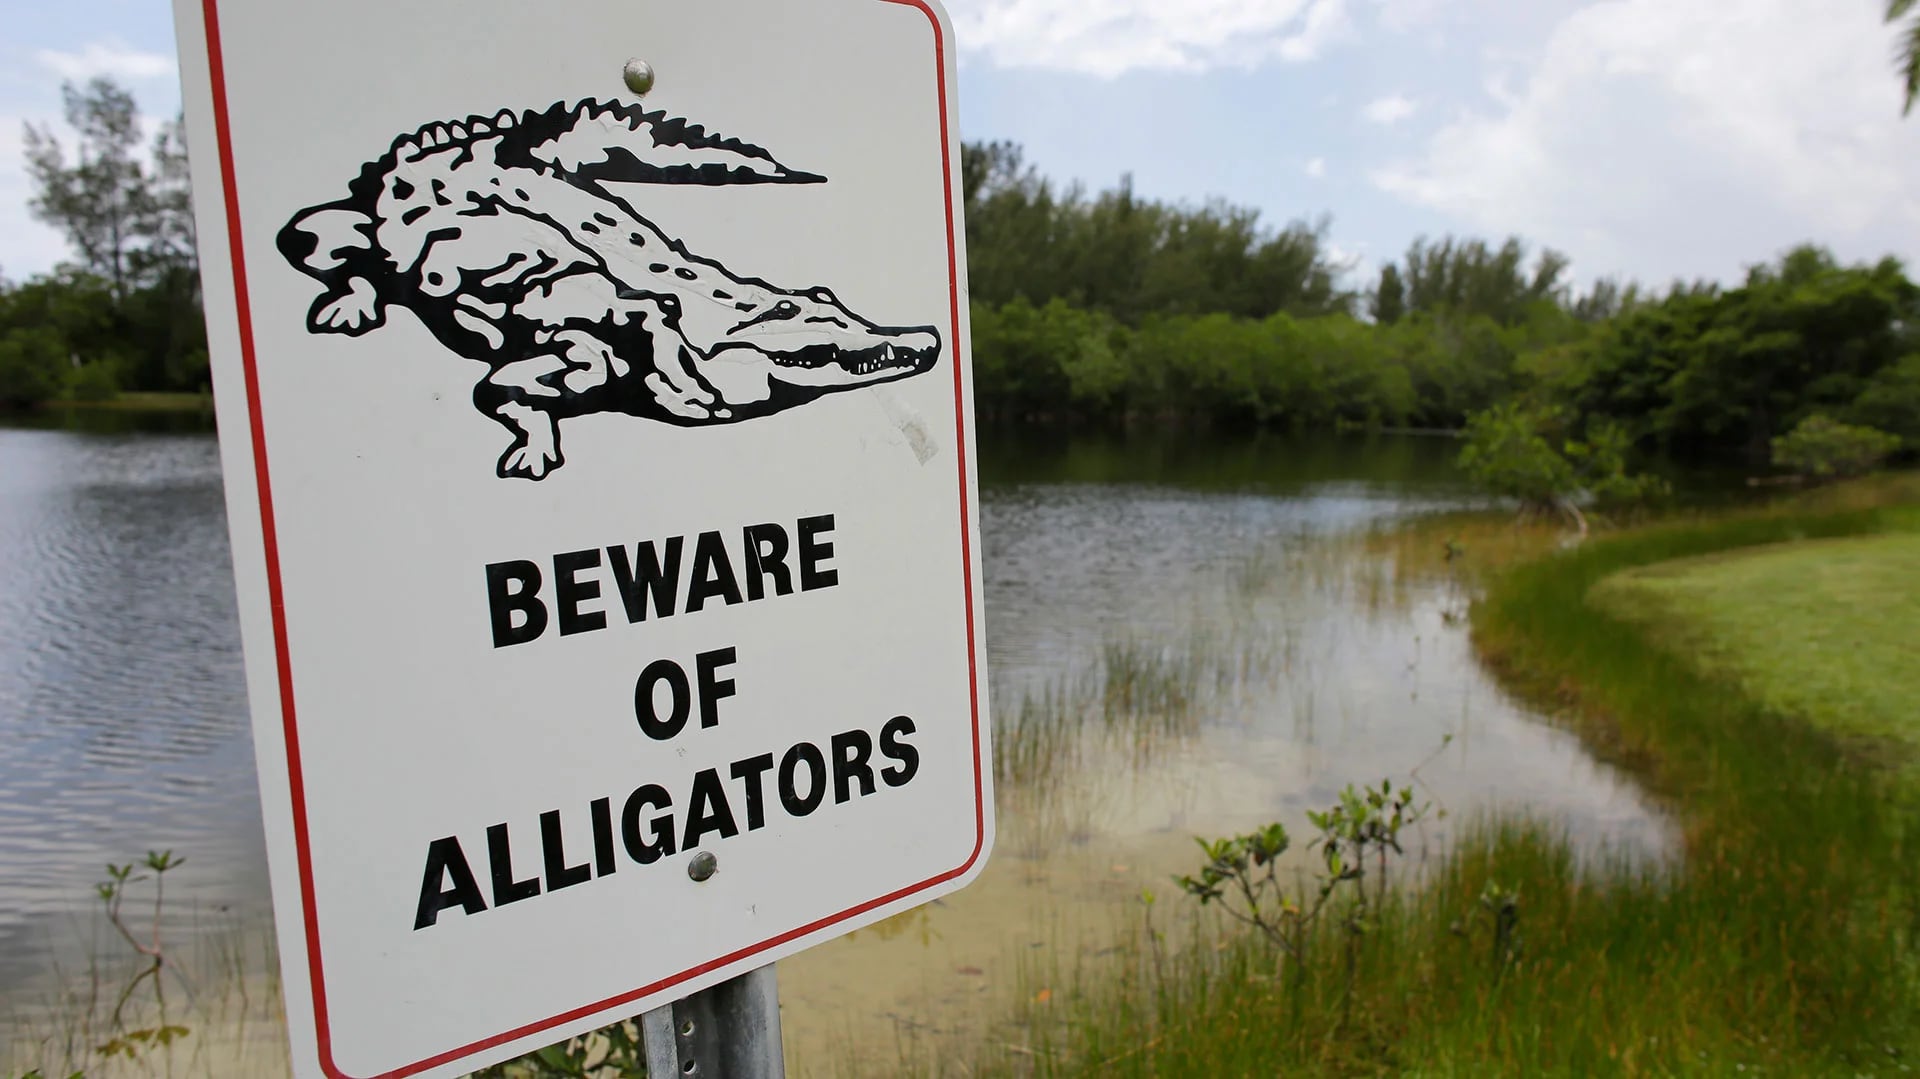 En Florida hay espacios públicos donde se alerta sobre la presencia de caimanes. Las leyes estatales prohíben alimentarlos (AP)